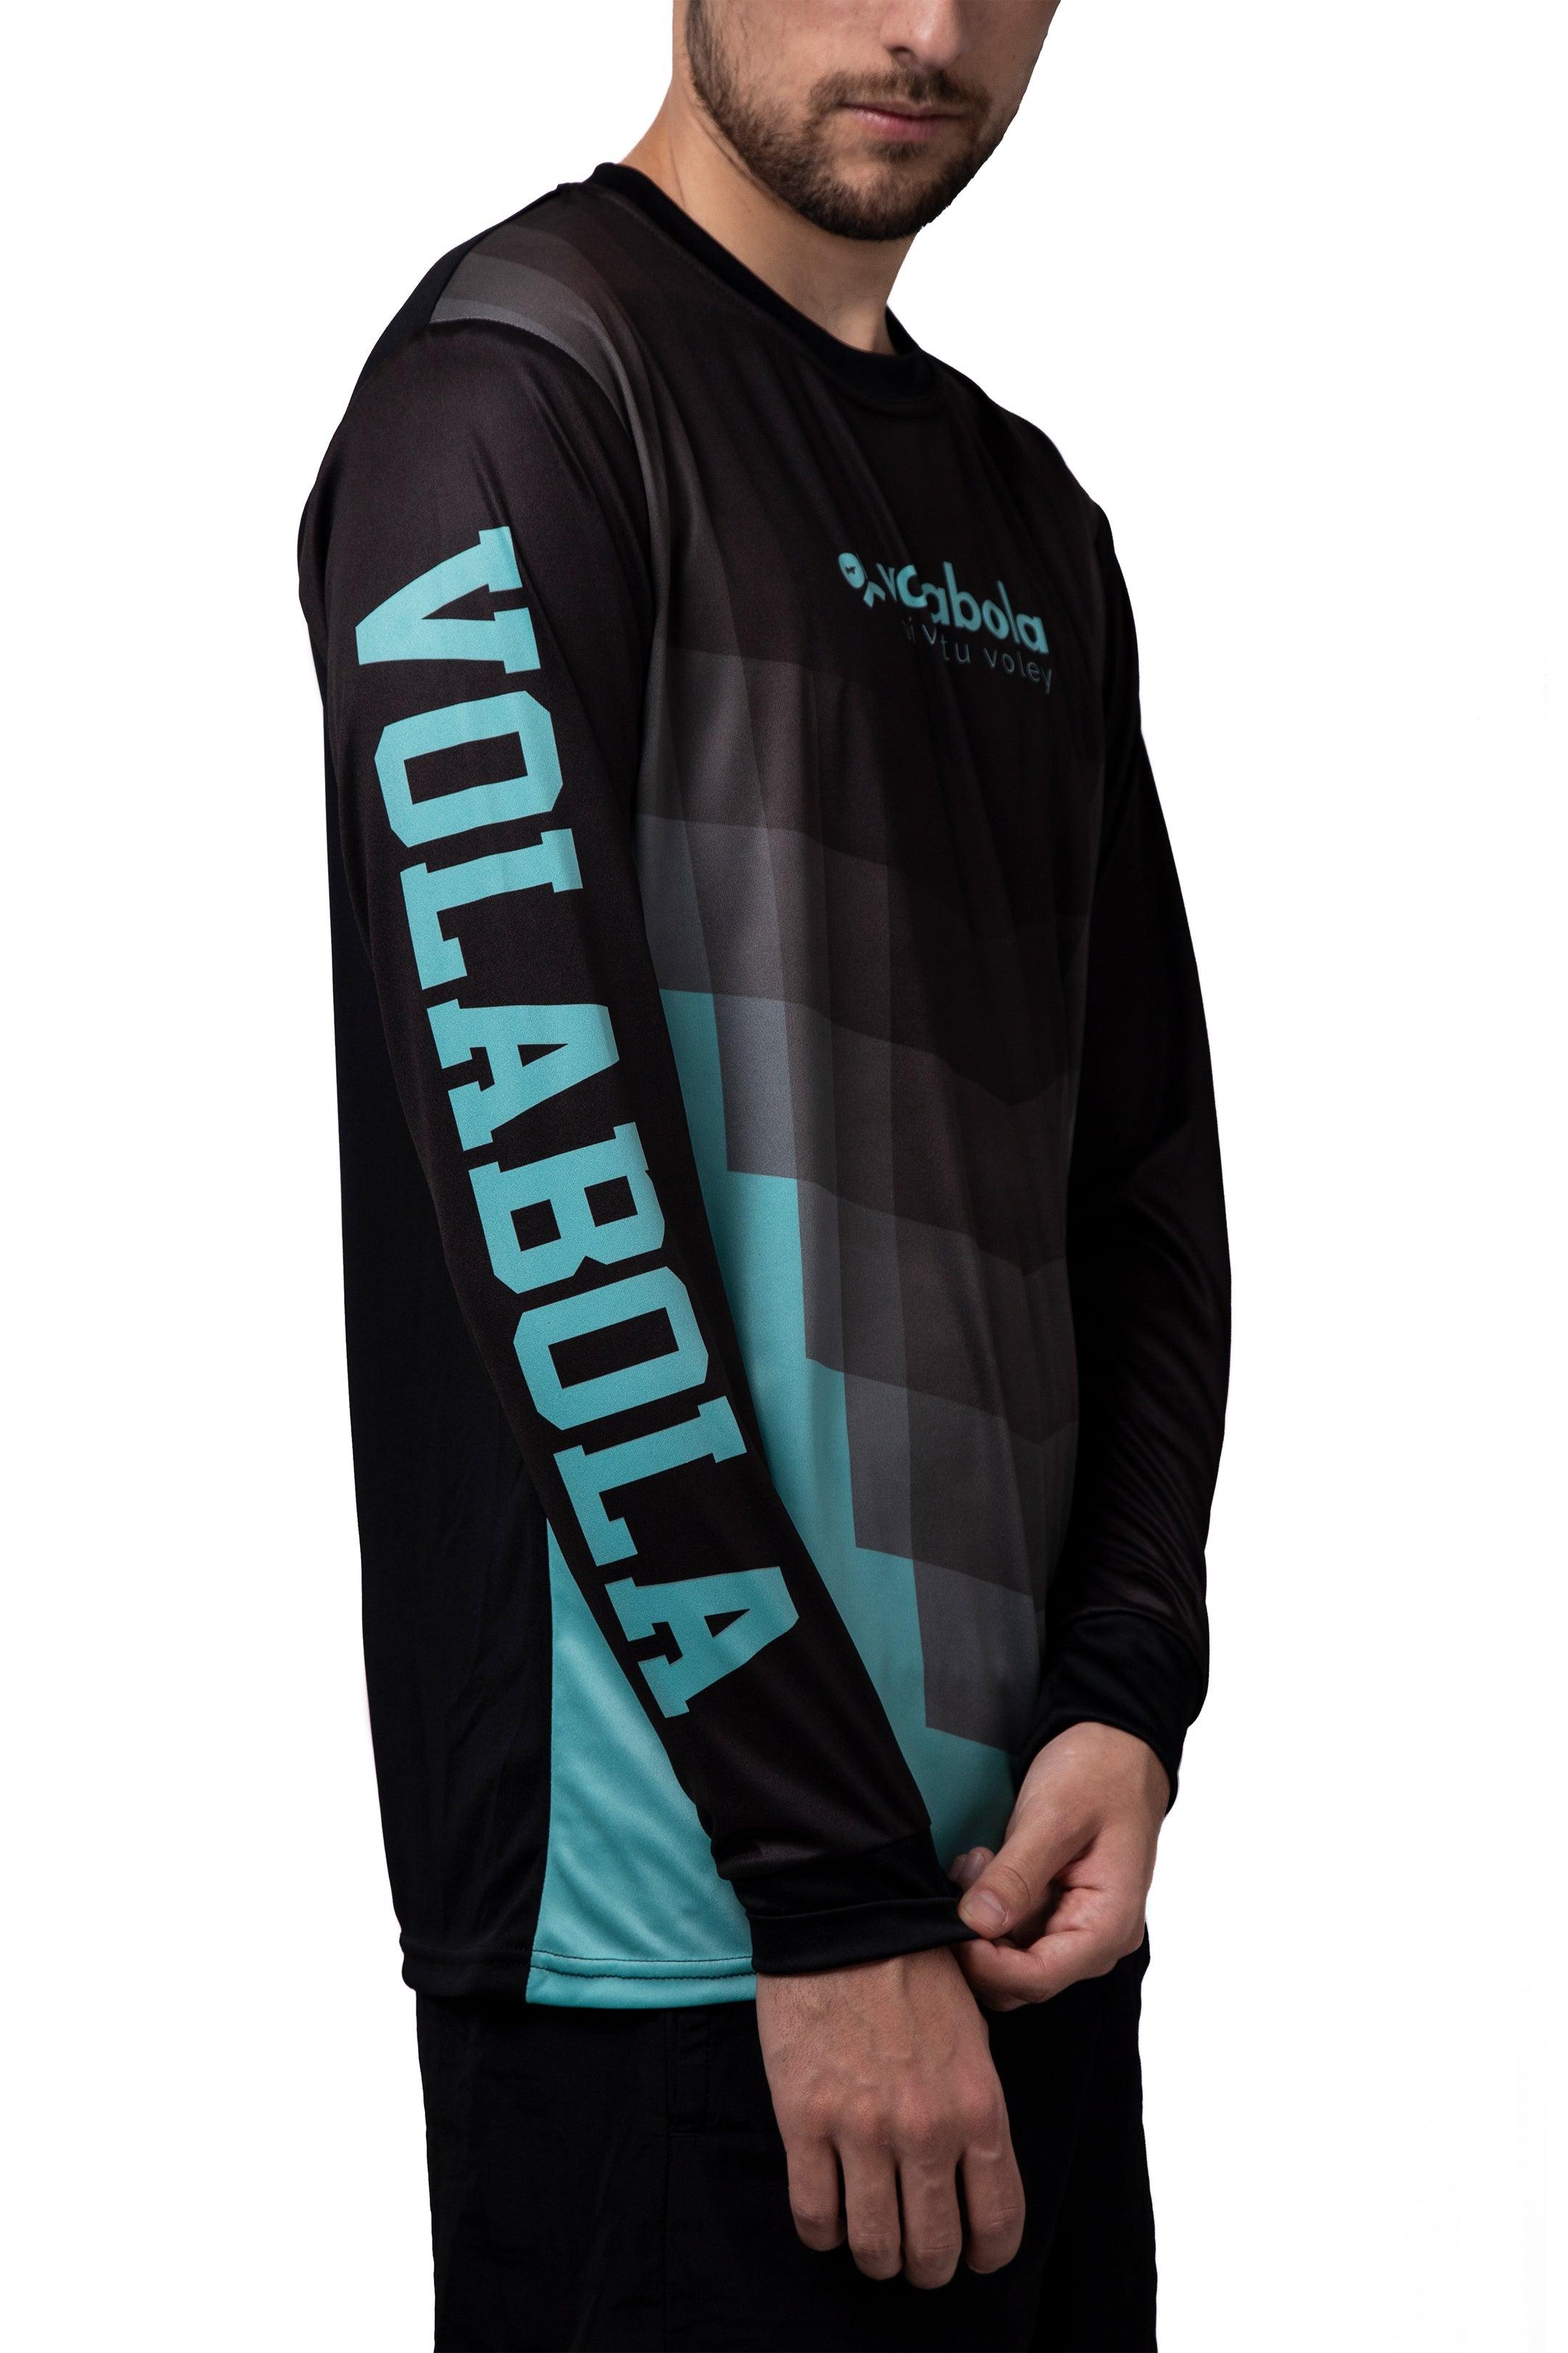 Camiseta manga larga unisex - Volabola - Volabola